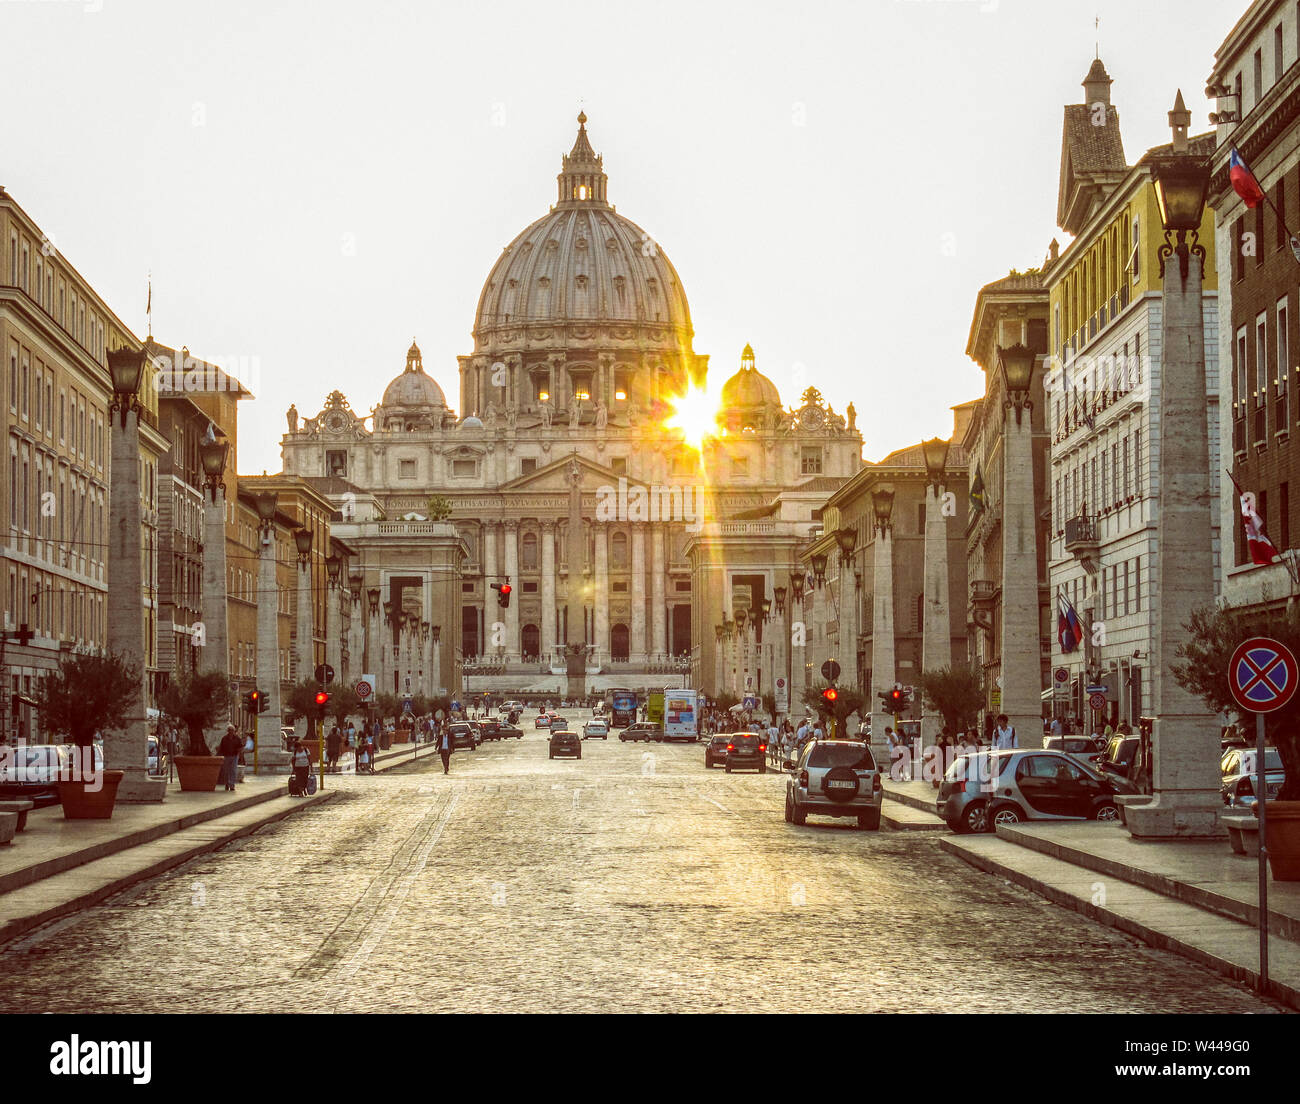 Strada (Via della Conciliazione) che conduce alla Basilica di San Pietro.  Roma, Italia. Fotografato a circa trenta minuti prima del tramonto Foto  stock - Alamy